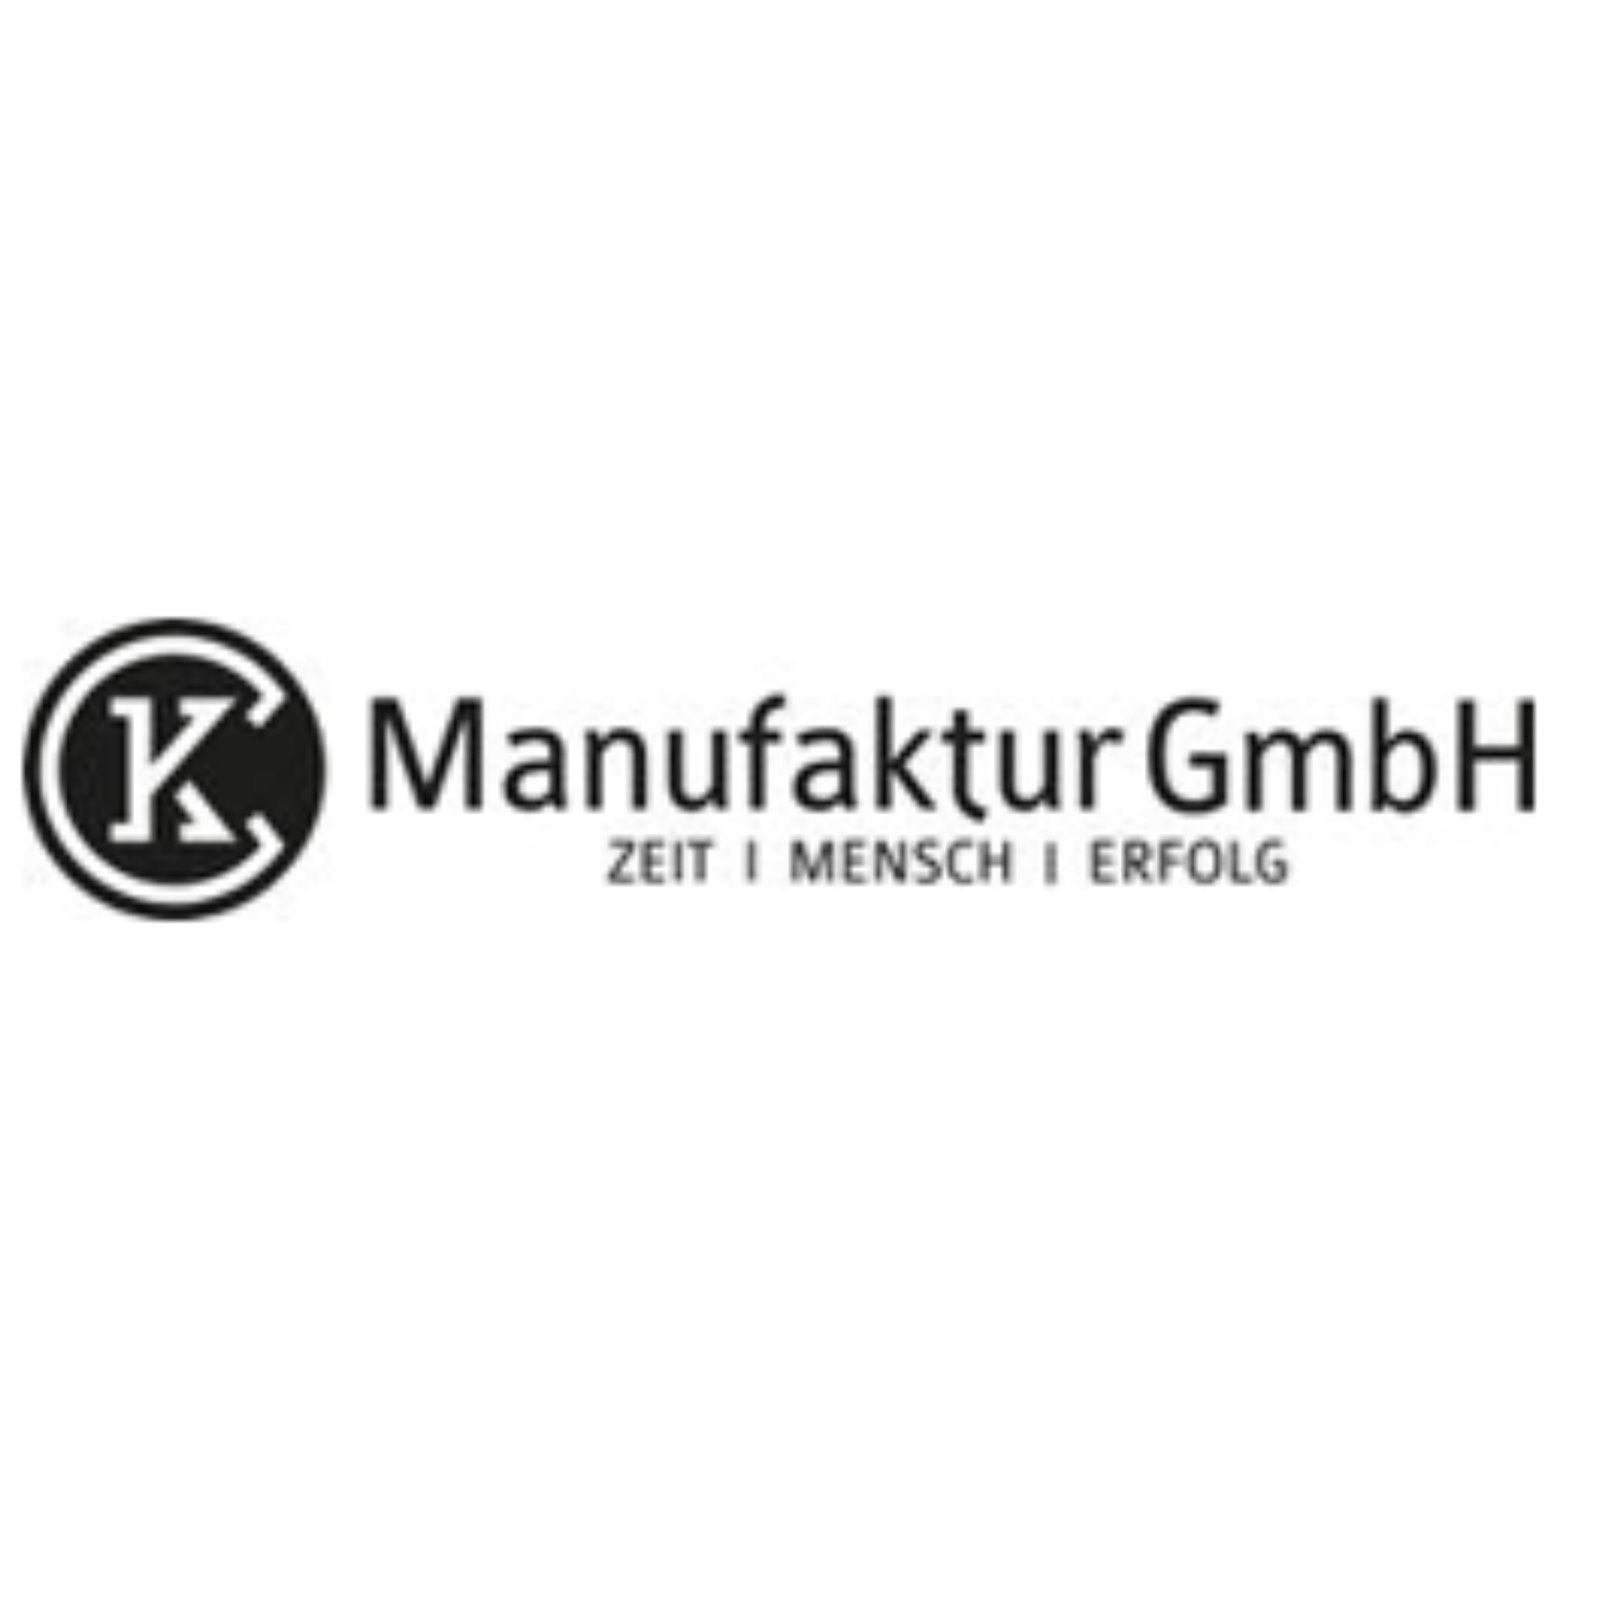 CK Manufaktur GmbH